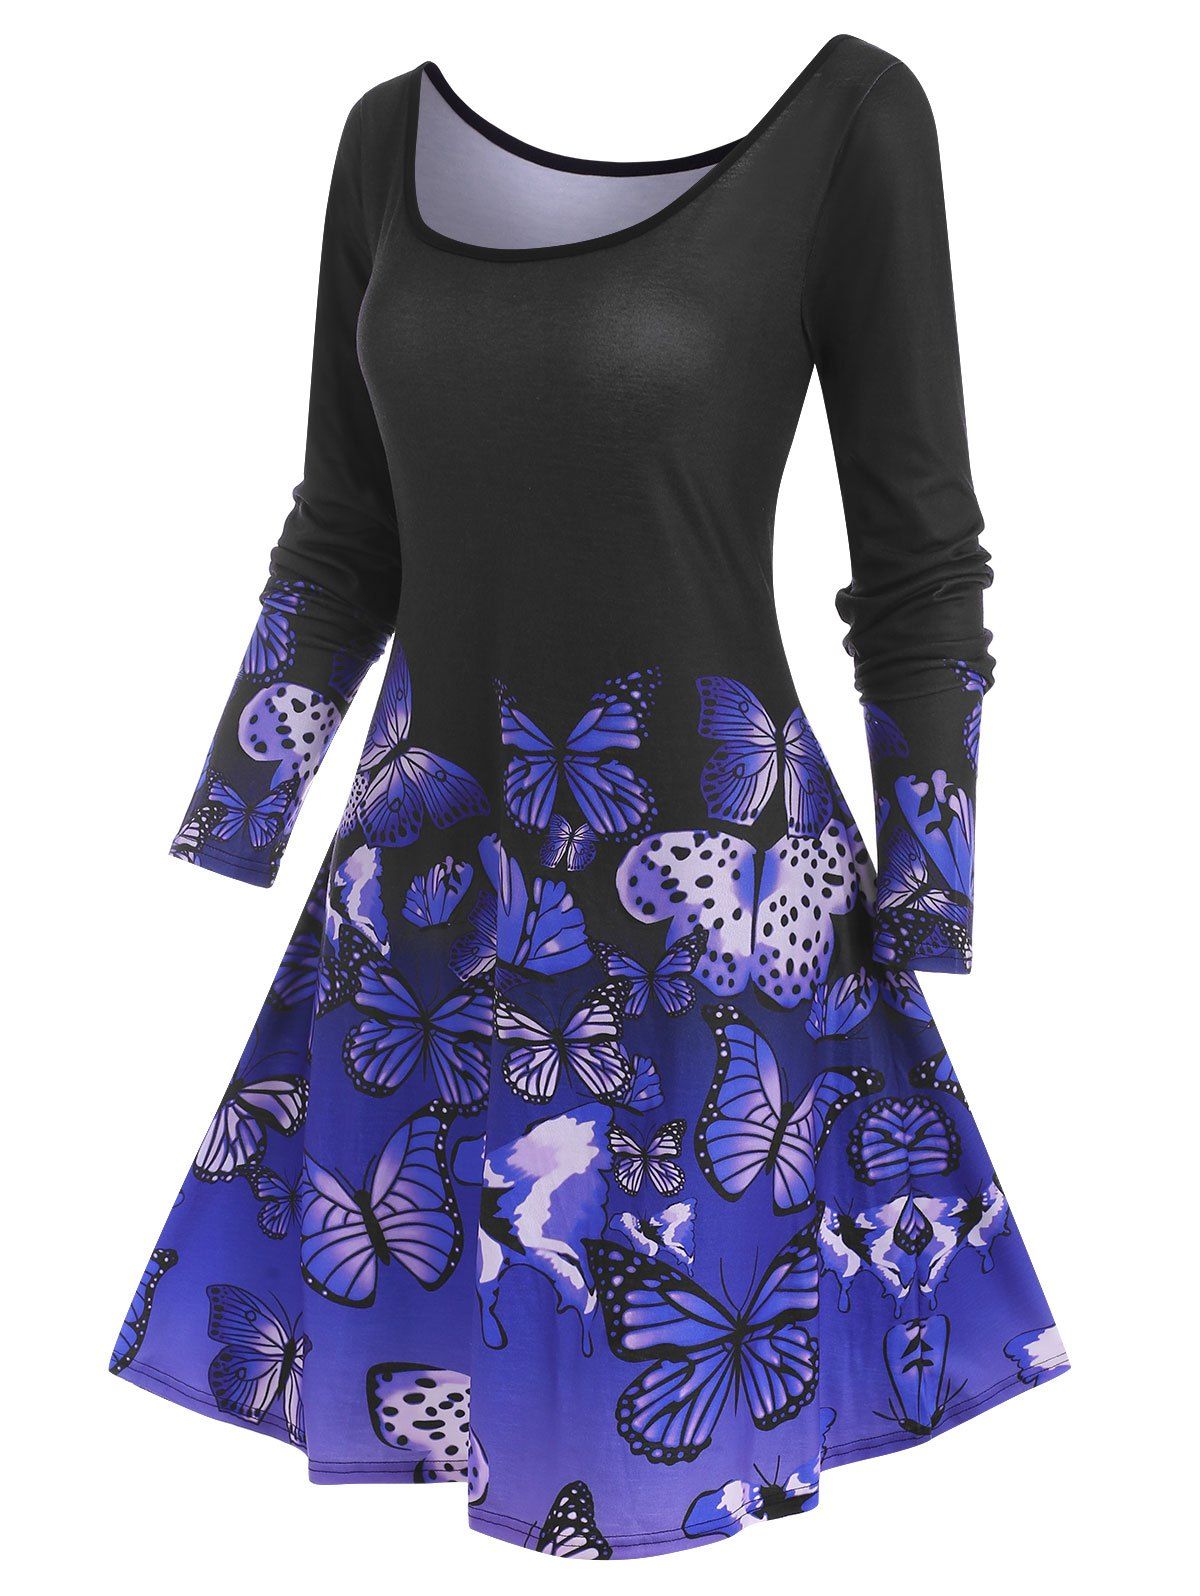 Long Sleeve Butterfly Print Tee Dress - PURPLE XXXL